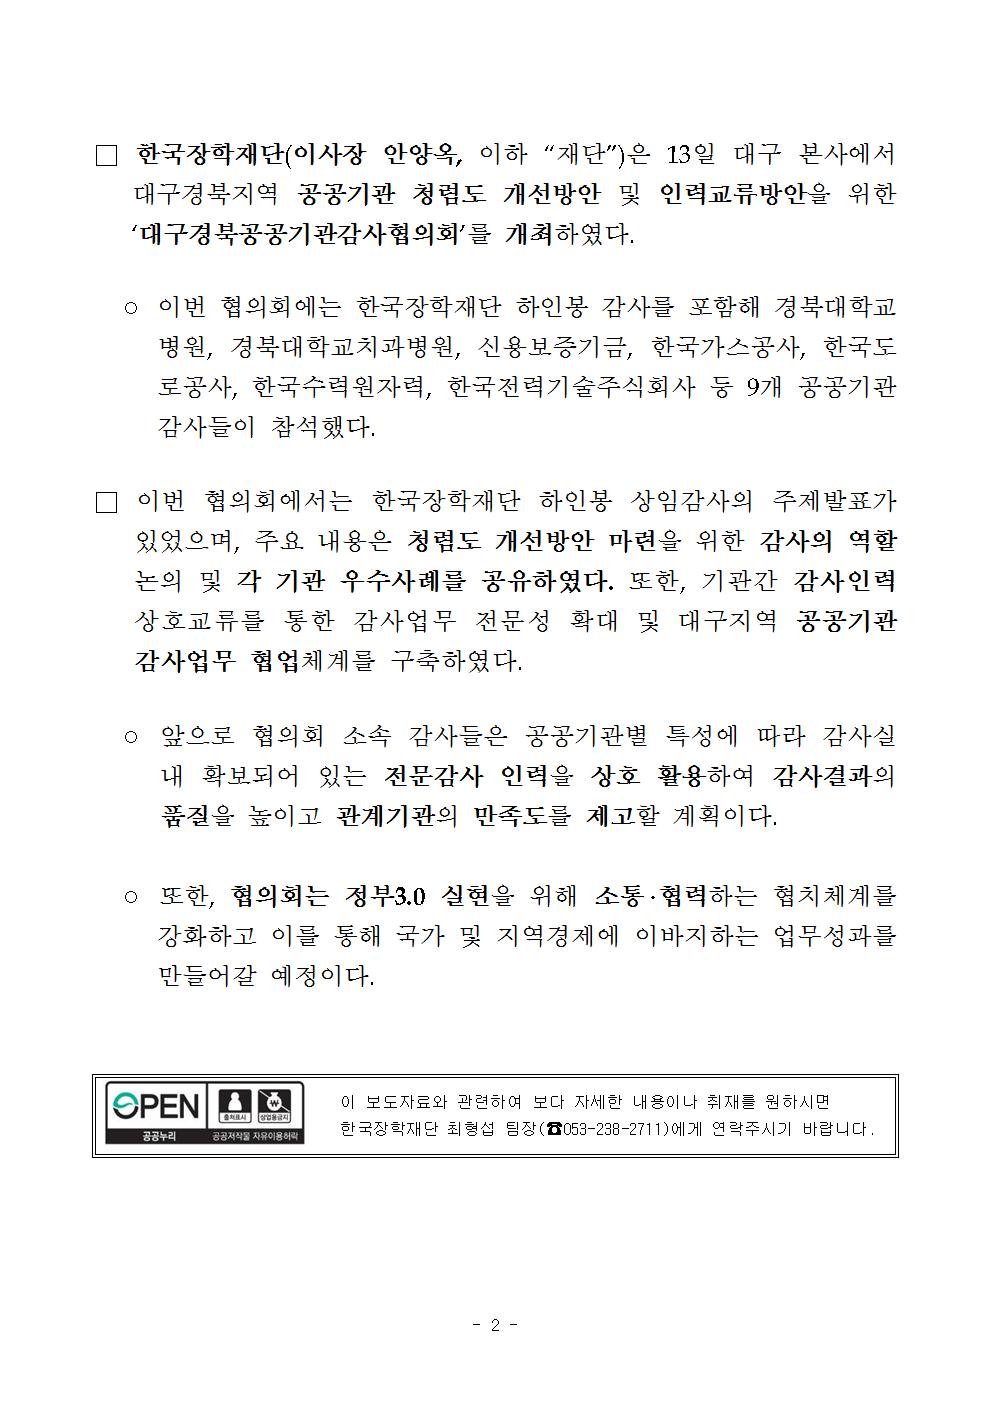 [보도자료] 한국장학재단, 대구경북공공기관감사협의회 개최 관련 두번째 이미지 내용입니다.  자세한 내용은 아래를 참고하세요.